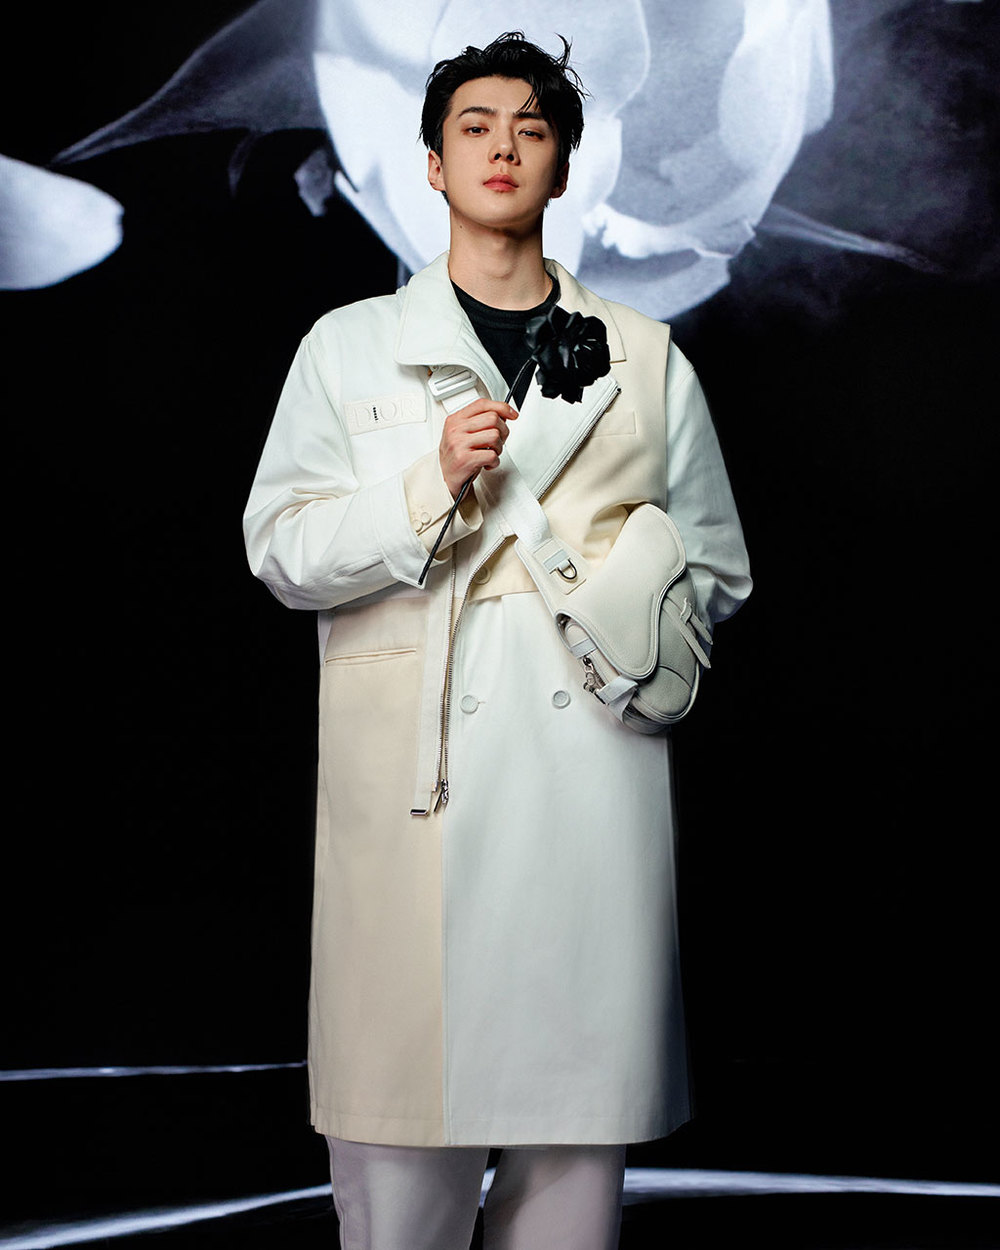 Following Jisoo Sehun EXO officially became Dior Global Ambassador